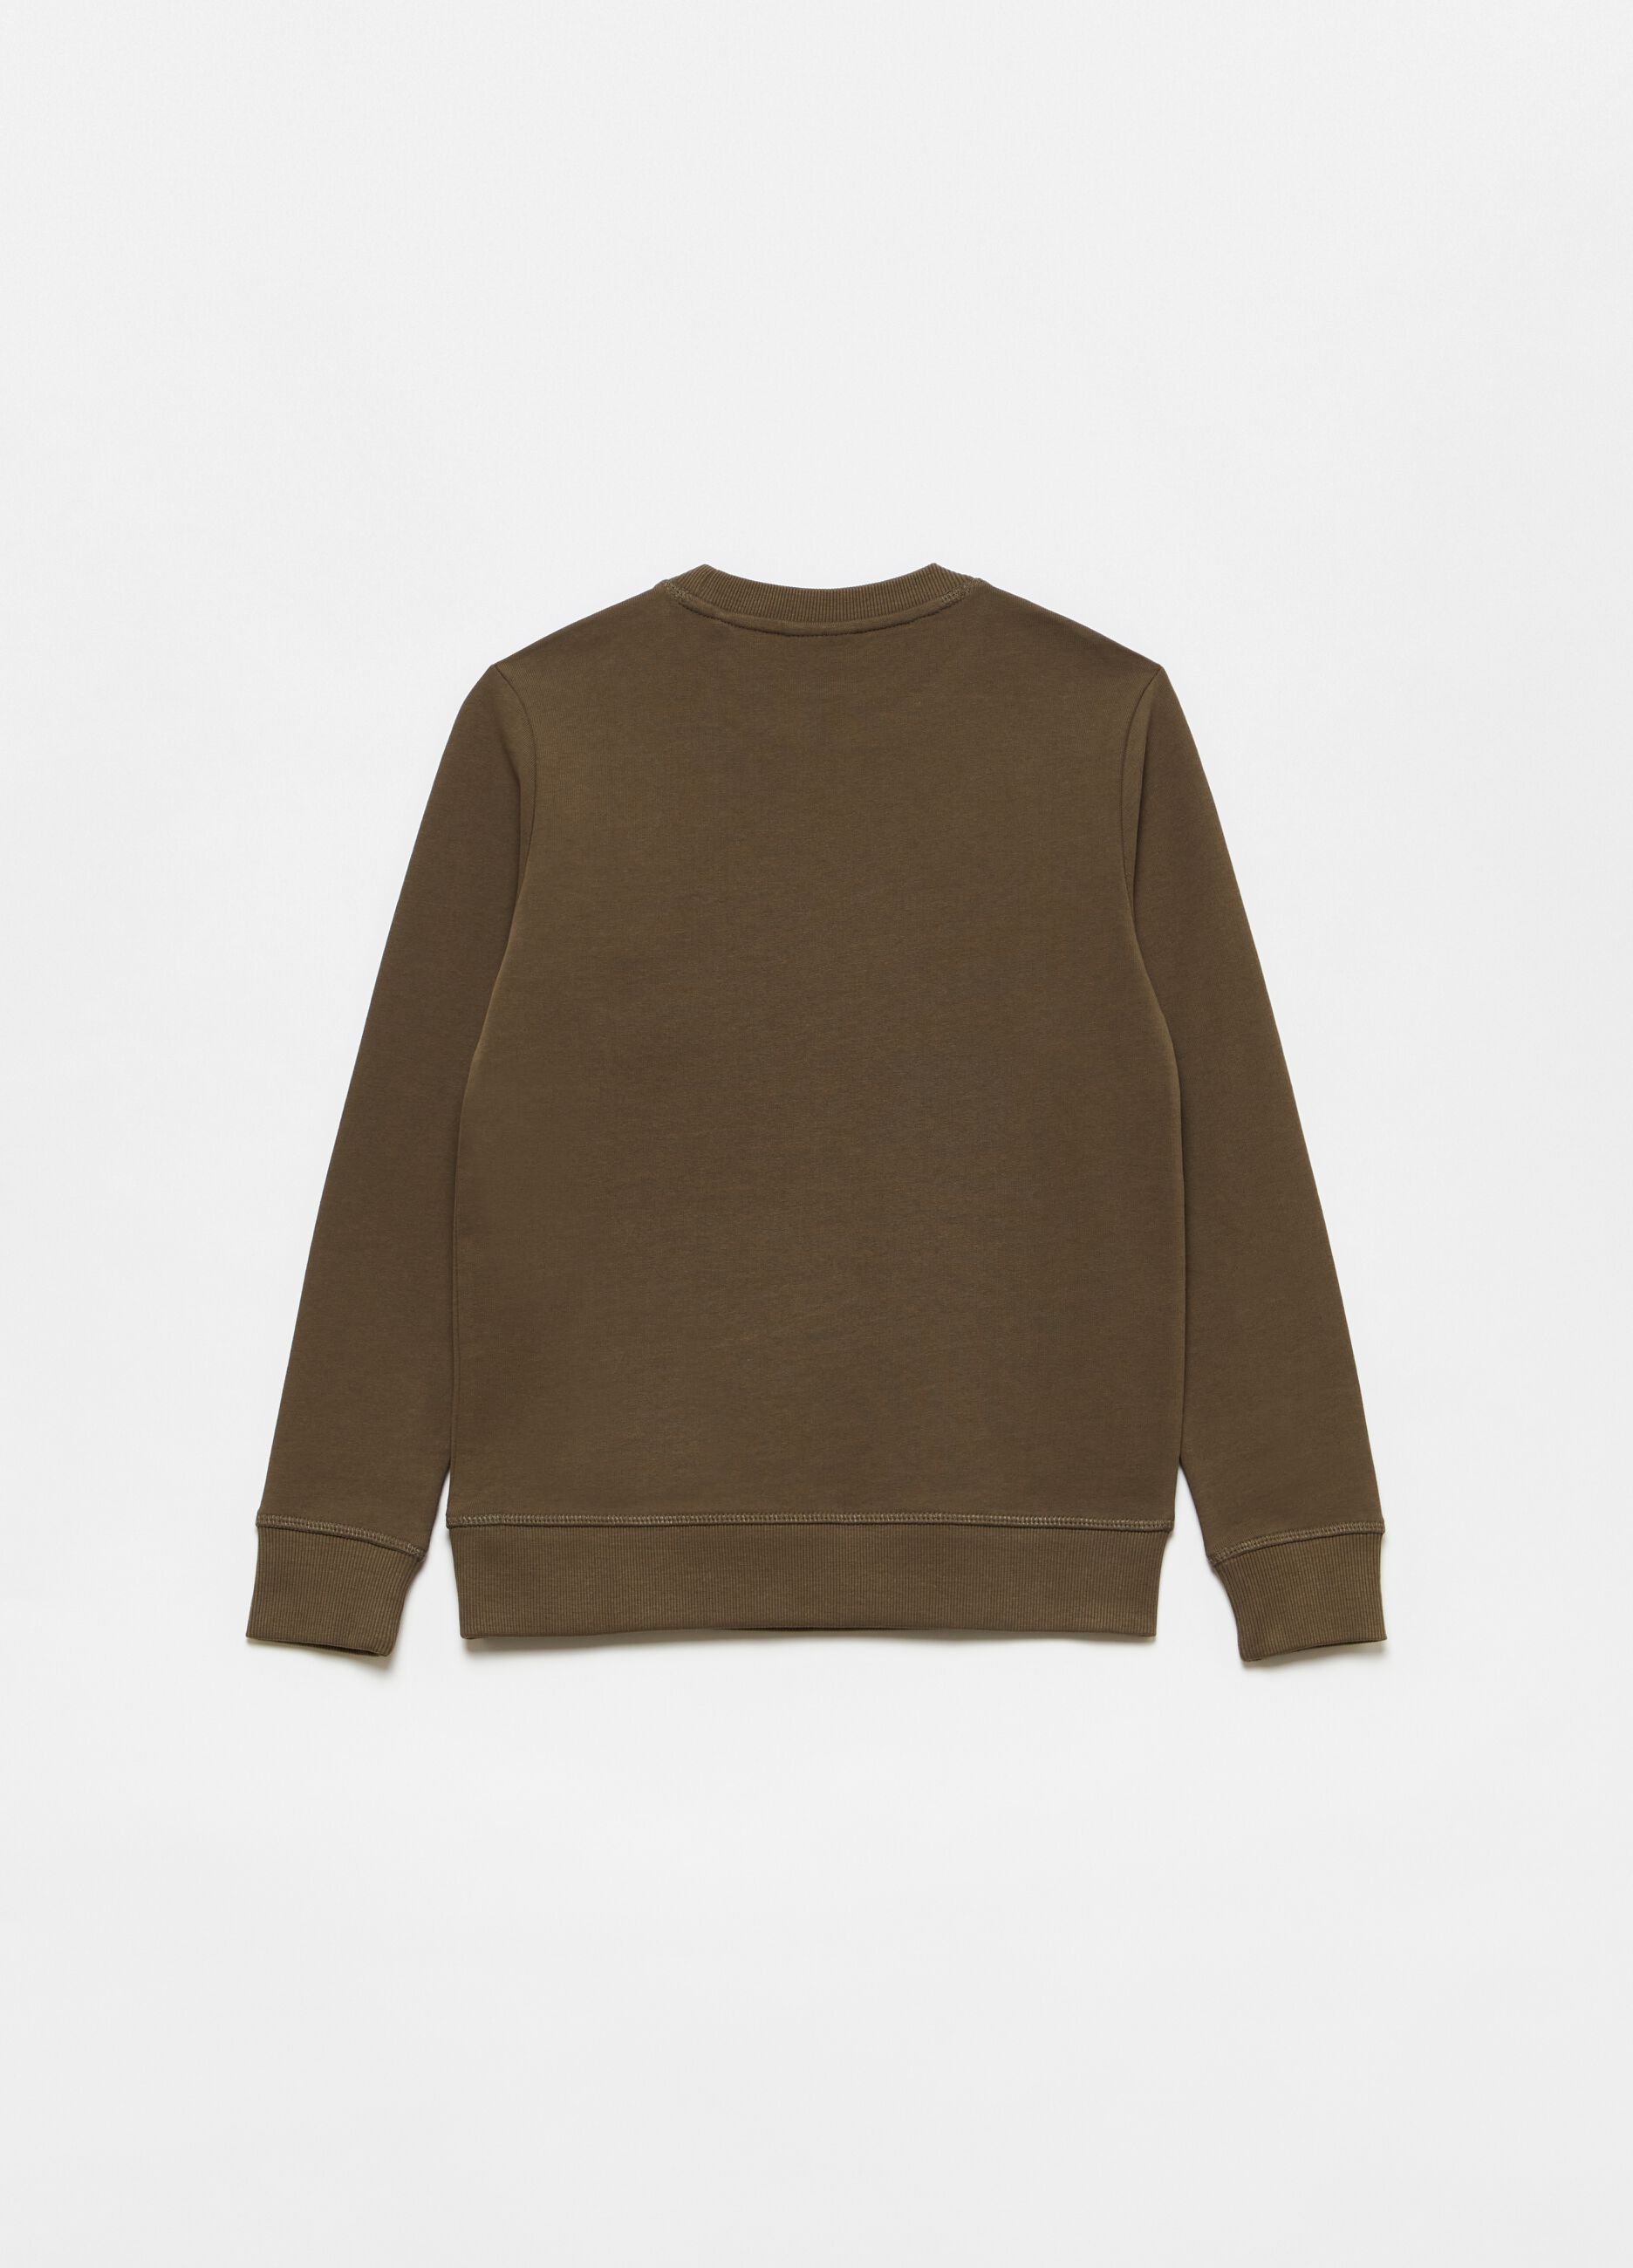 Sweatshirt in 100% cotton with round neck